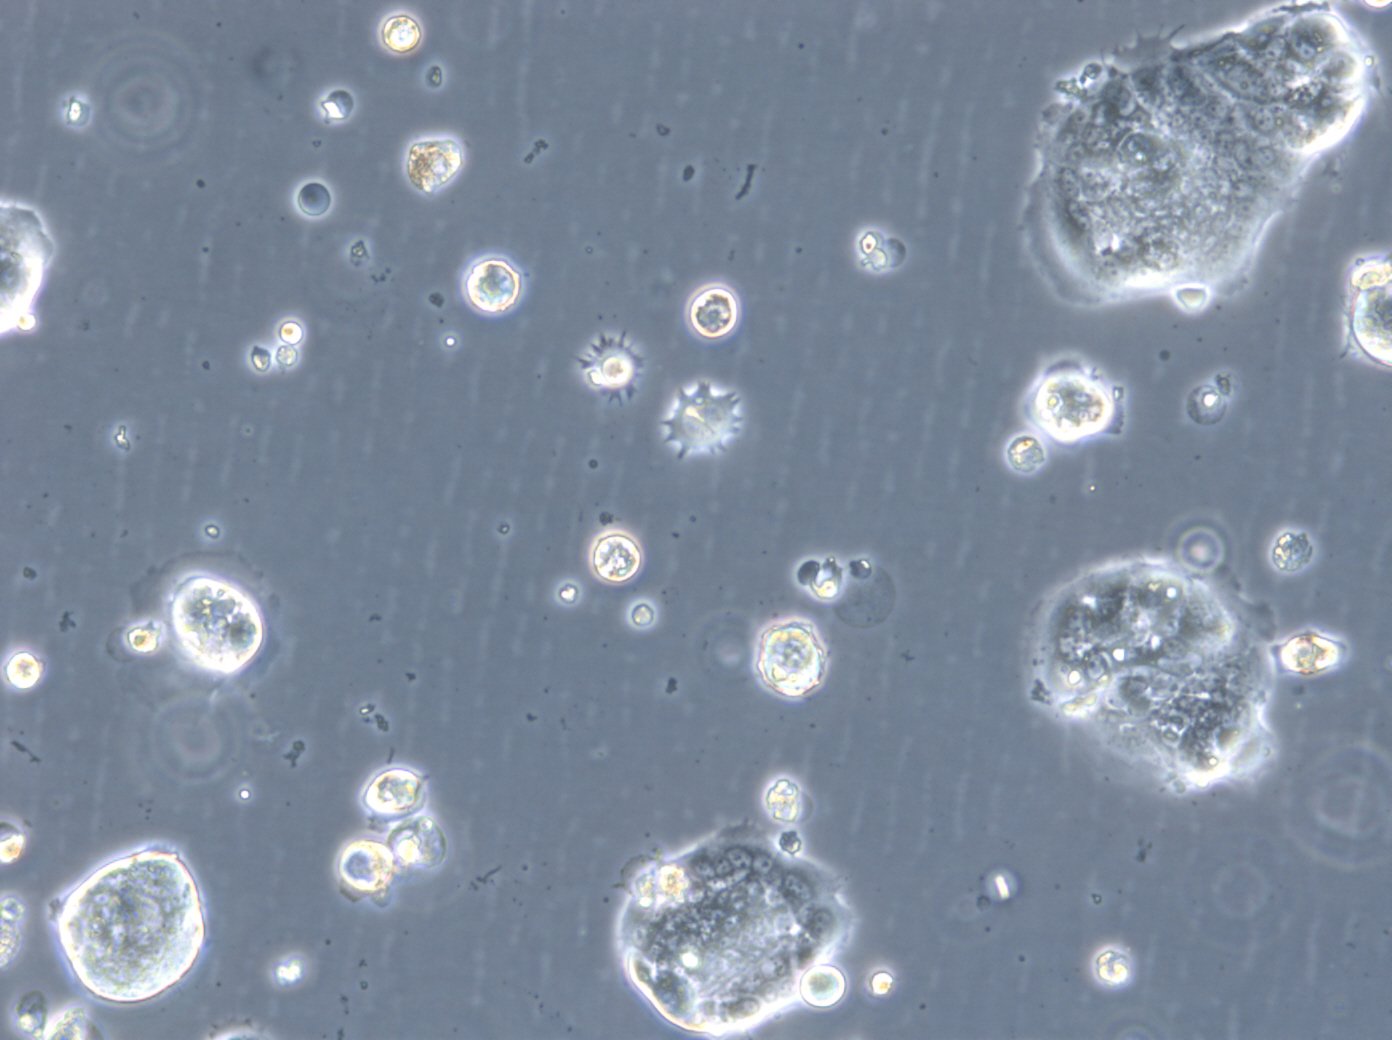 HROC46 T0 M1 Cells